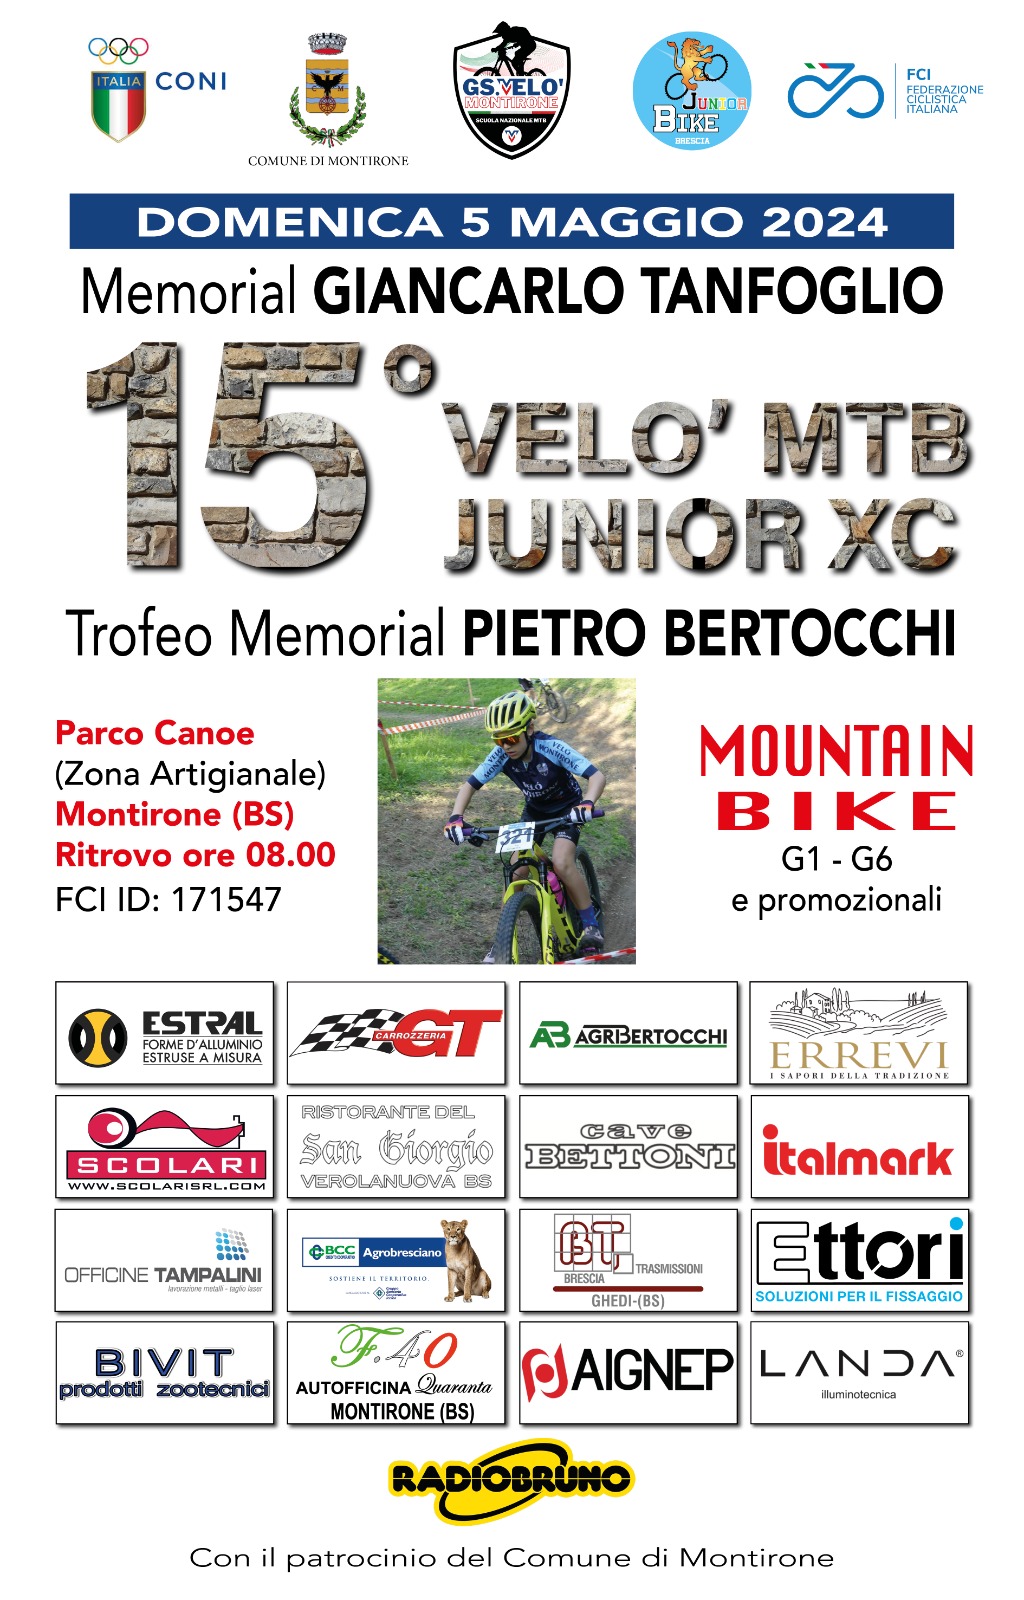 Domenica 5 maggio, a Montirone, il Trofeo Memorial Pietro Bertocchi!